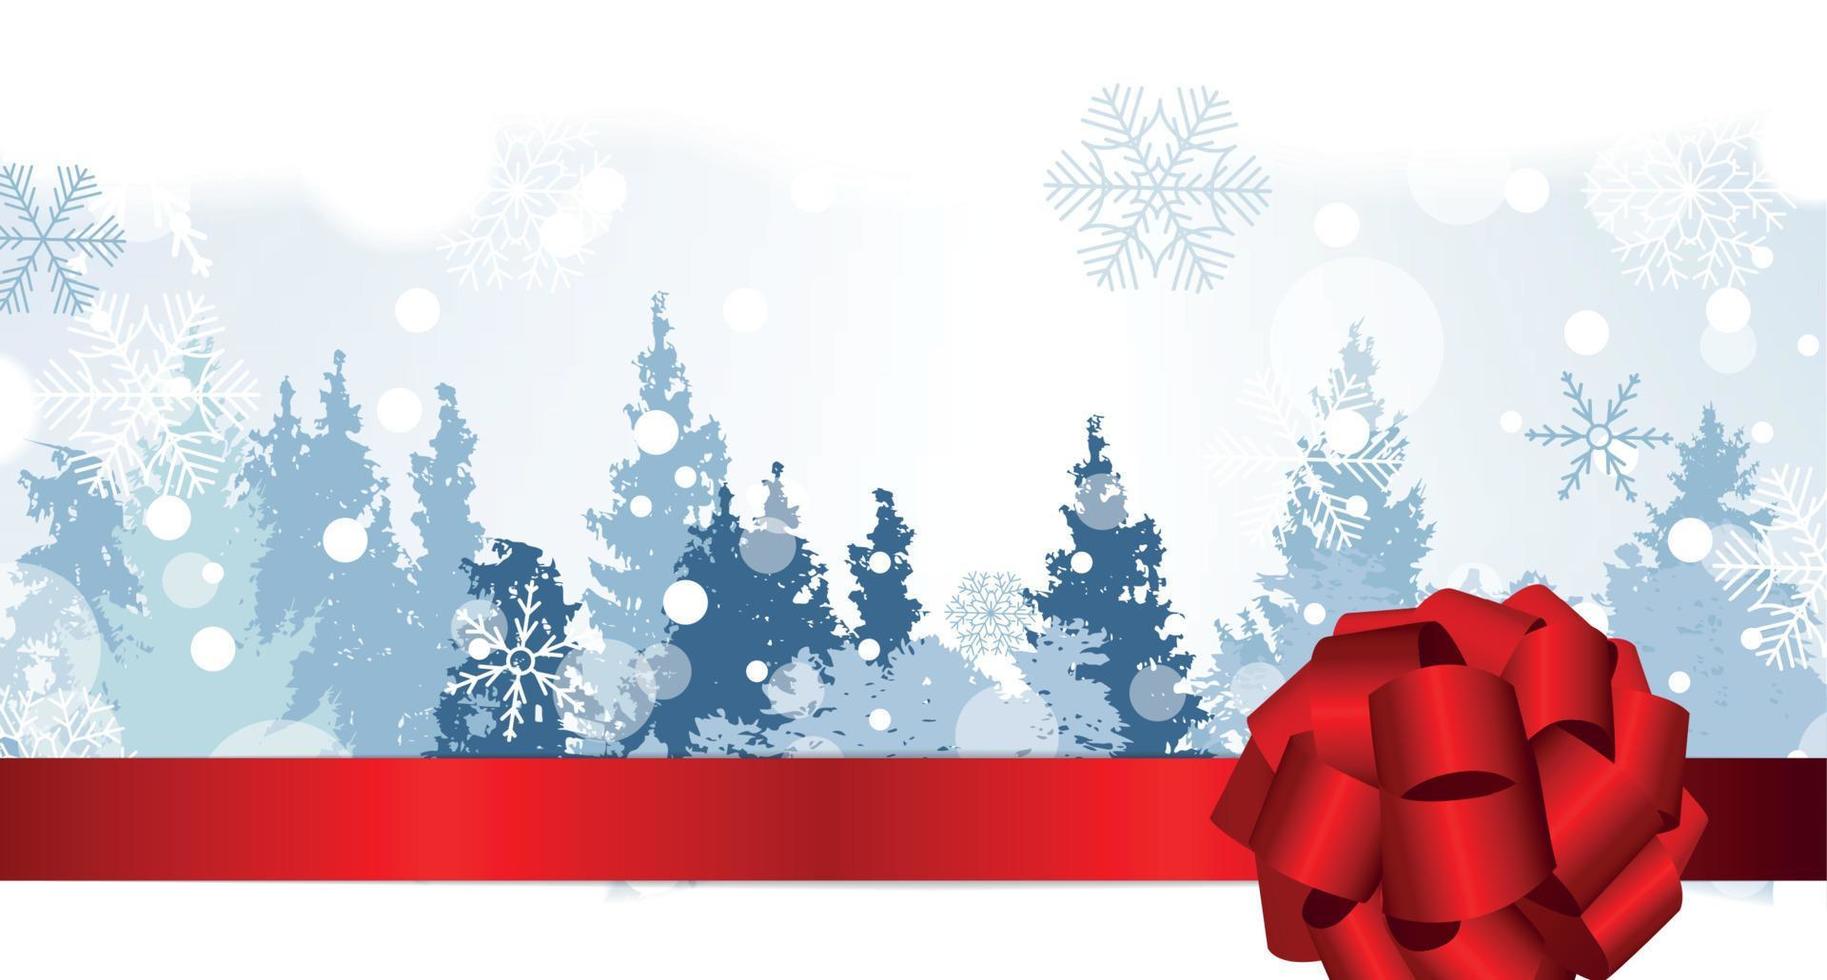 jul snöflingor på bakgrund med en siluett av träd. vektor illustration.